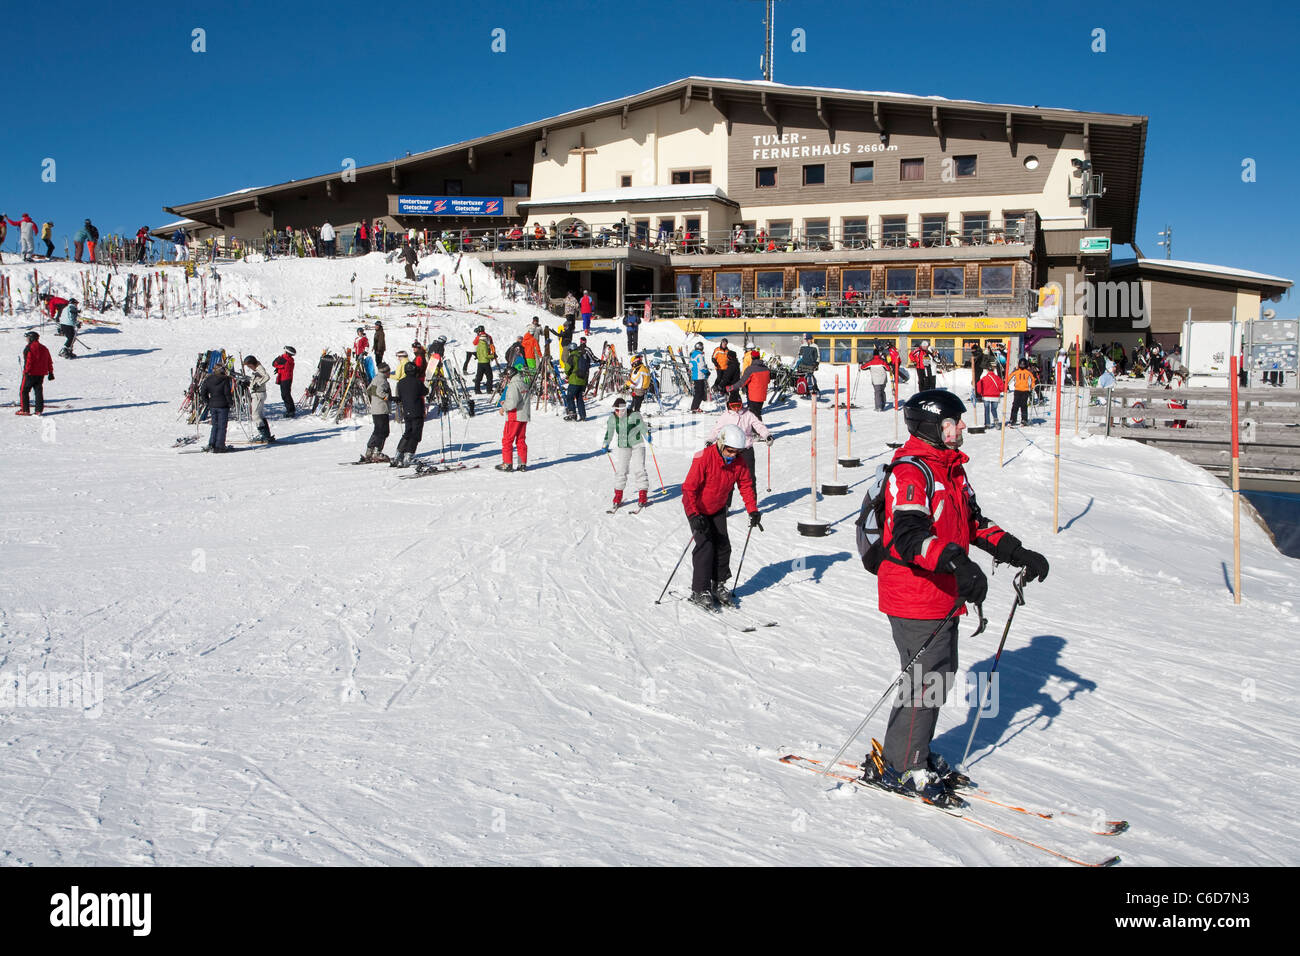 Hintertuxer Gletscher, suis Skifahrer Fernerhaus skieur,au glacier de Hintertux, Ferner house Banque D'Images